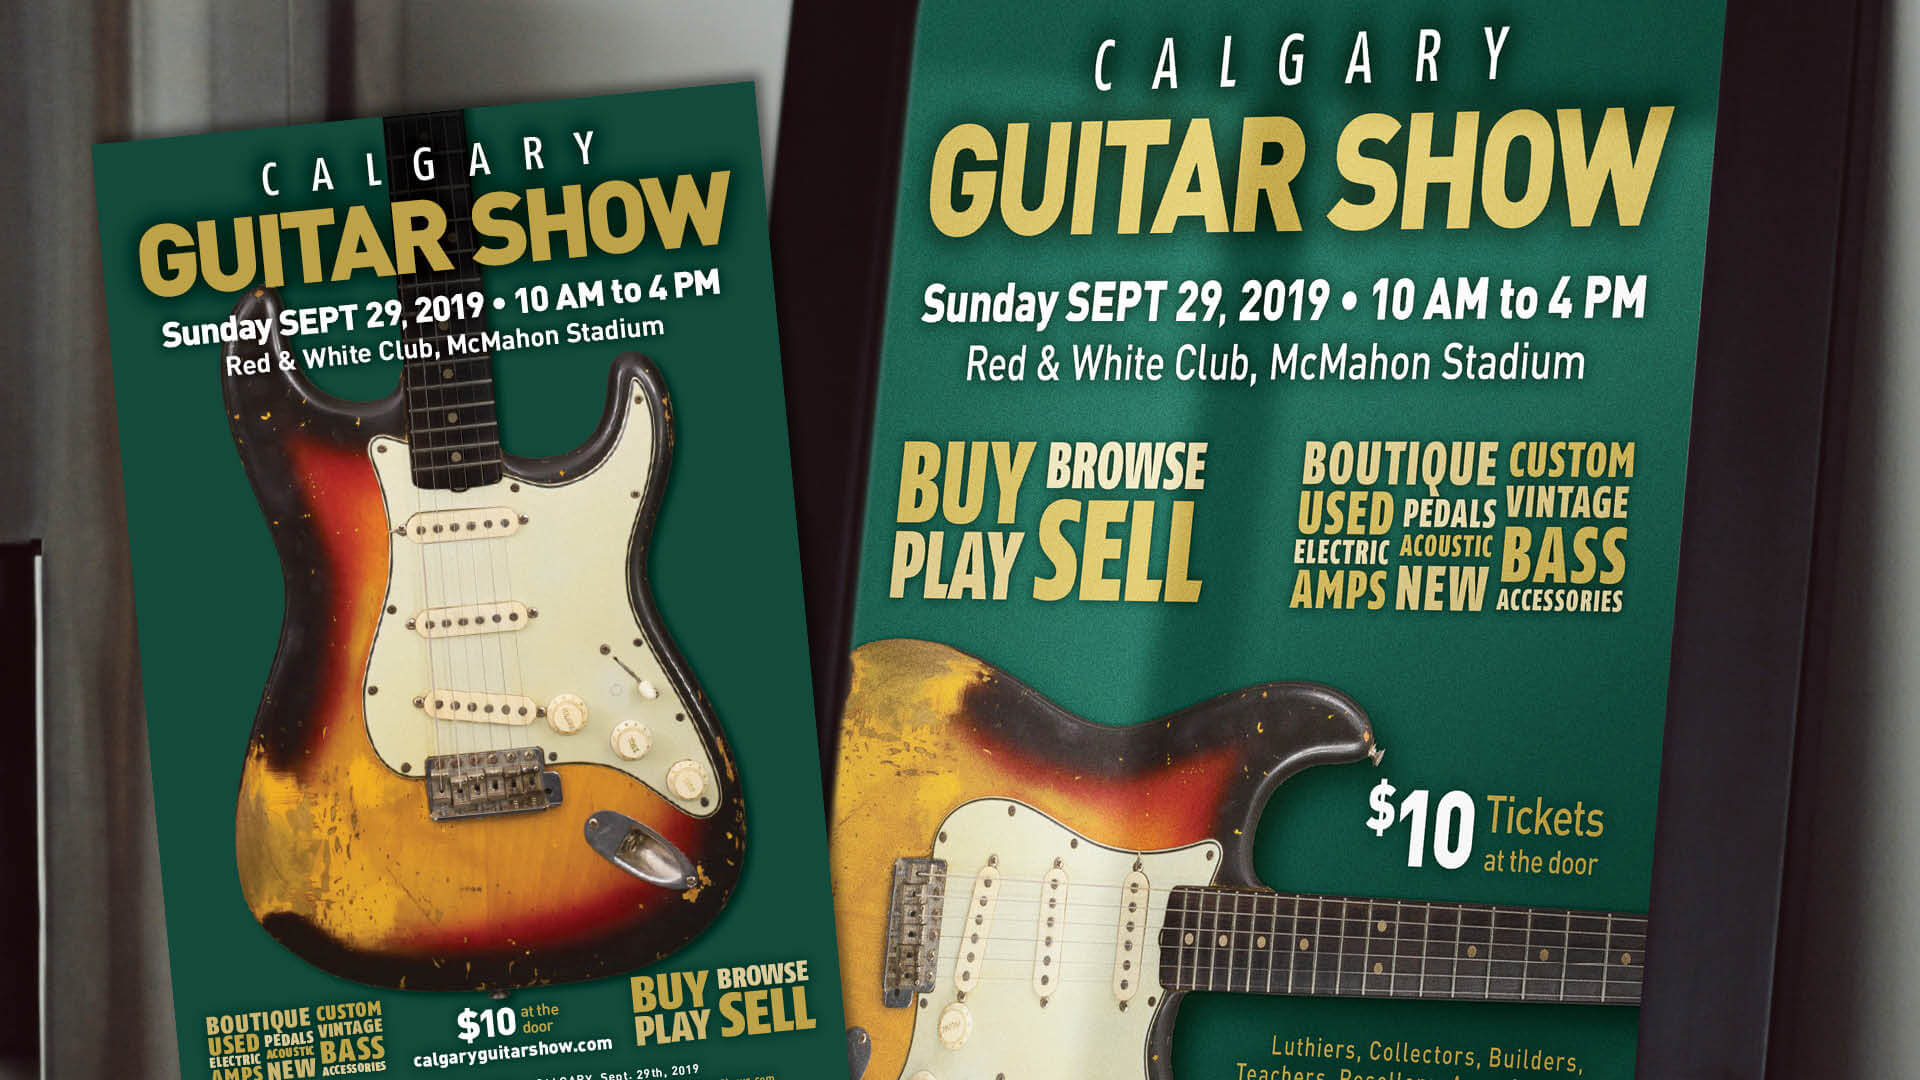 Canadian Guitar Shows, Print, Calgary & Edmonton Guitar Shows, Portfolio Image